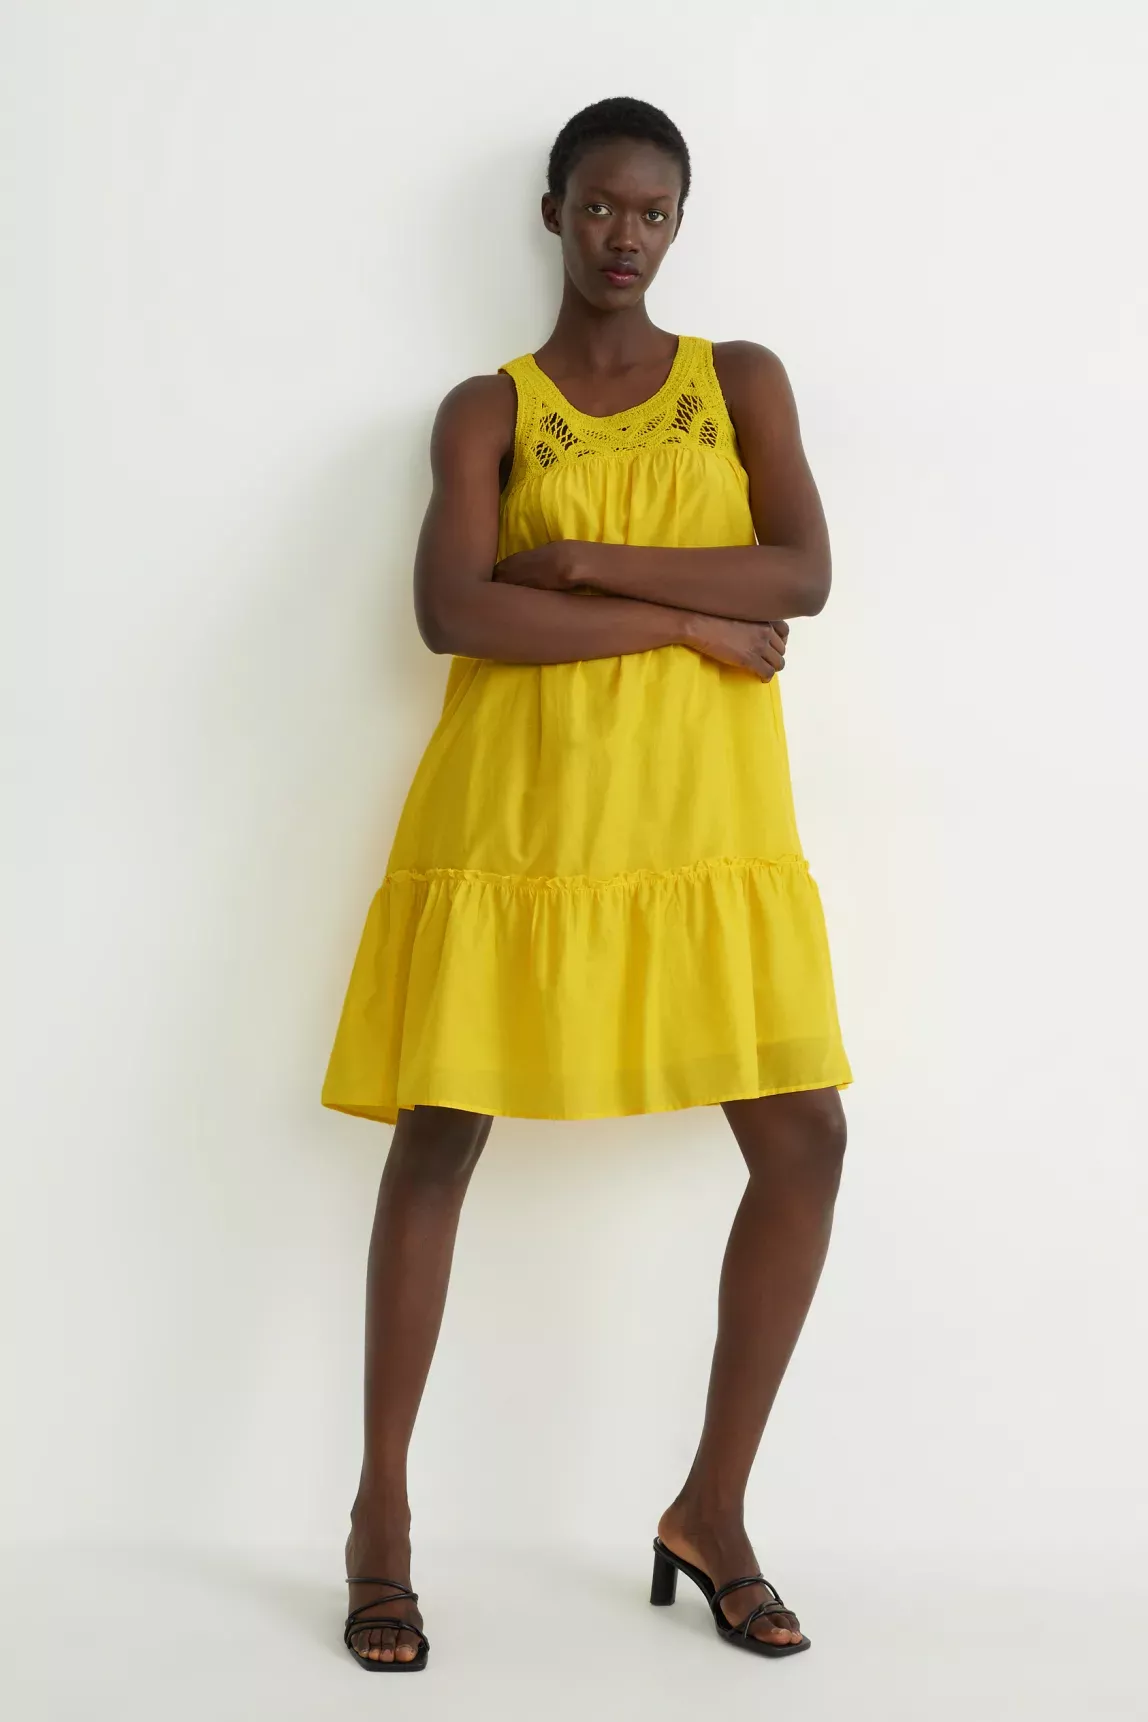 Traumhaftes Sommerkleid von C&A: In leuchtendem Gelb in den Urlaub